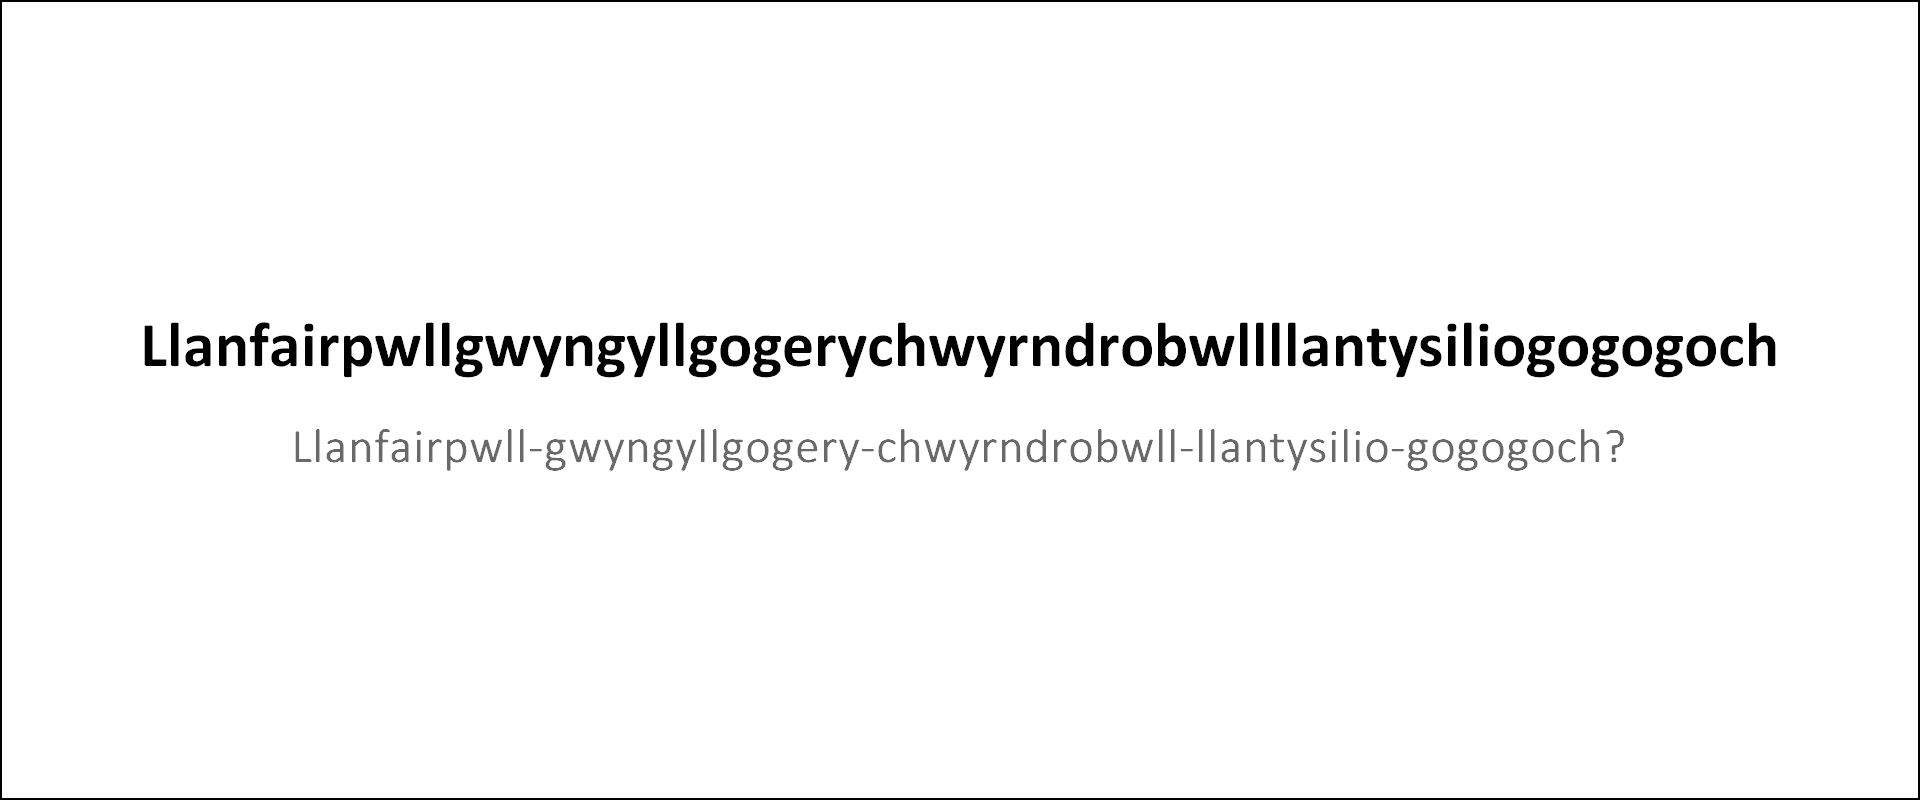 "Llanfairpwllgwyngyllgogerychwyrndrobwllllantysiliogogogoch" der Name einer Stadt in Wales (GB)